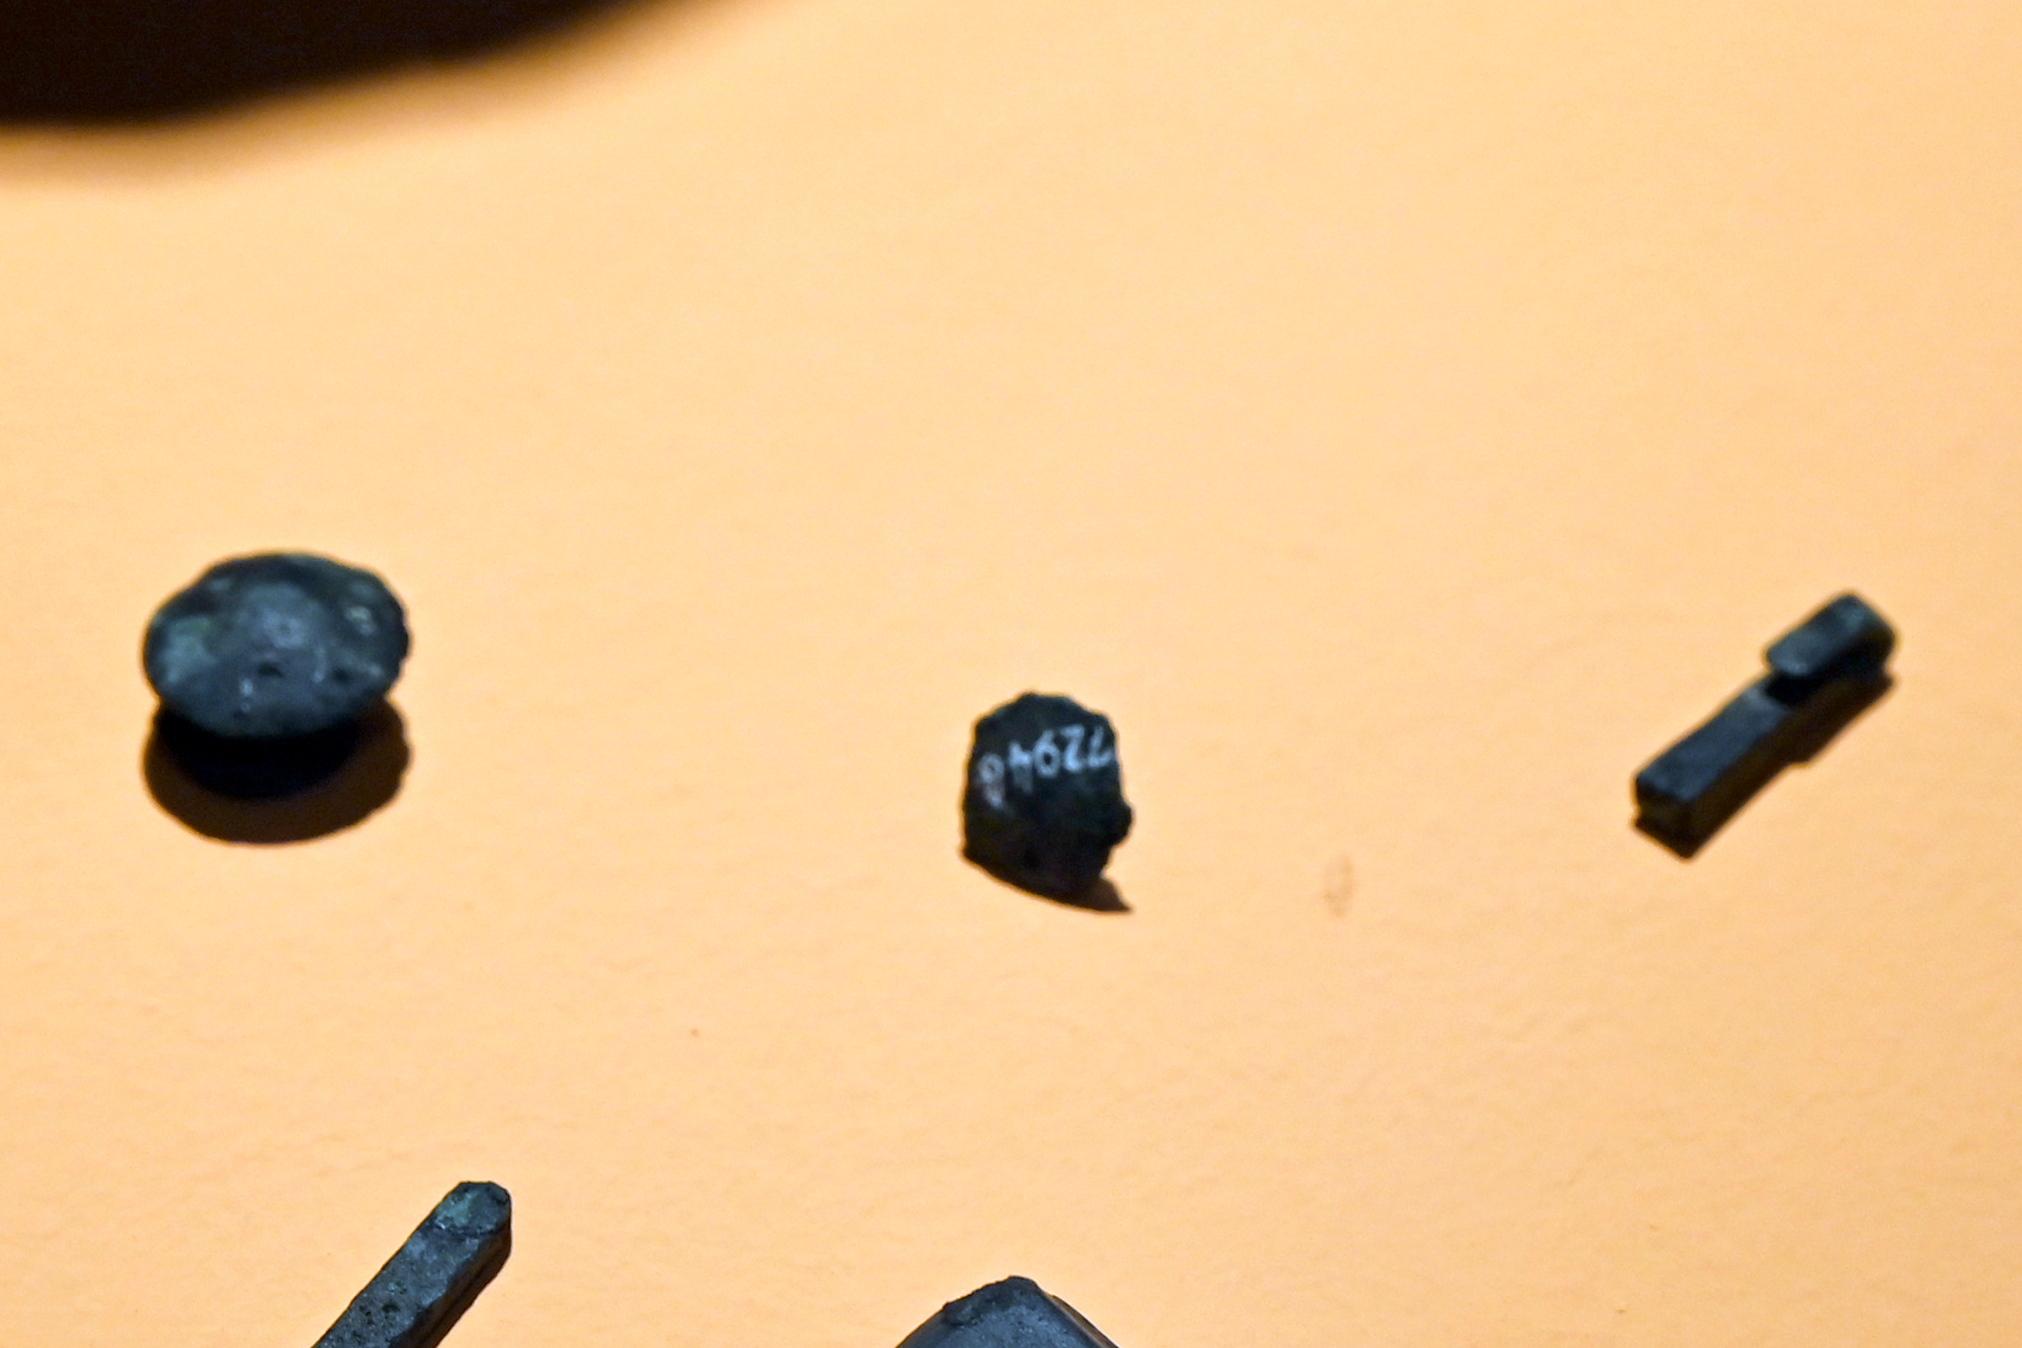 Grabbeigaben aus Bronze in einer Urne, Späte (Jüngere) Bronzezeit, 1500 - 700 v. Chr., 1100 - 1050 v. Chr., Bild 1/2